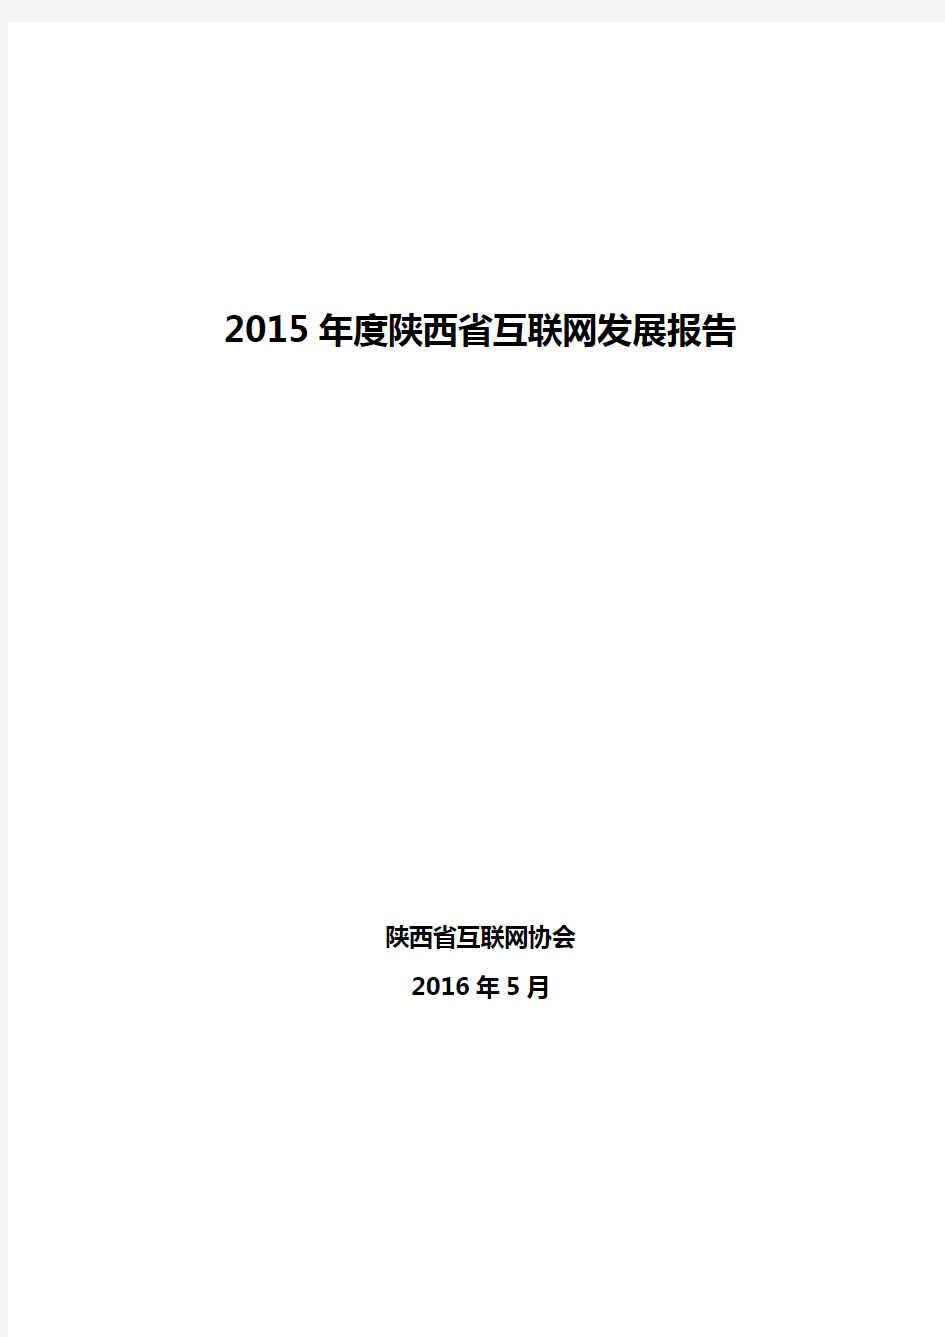 2015年度陕西省互联网发展报告